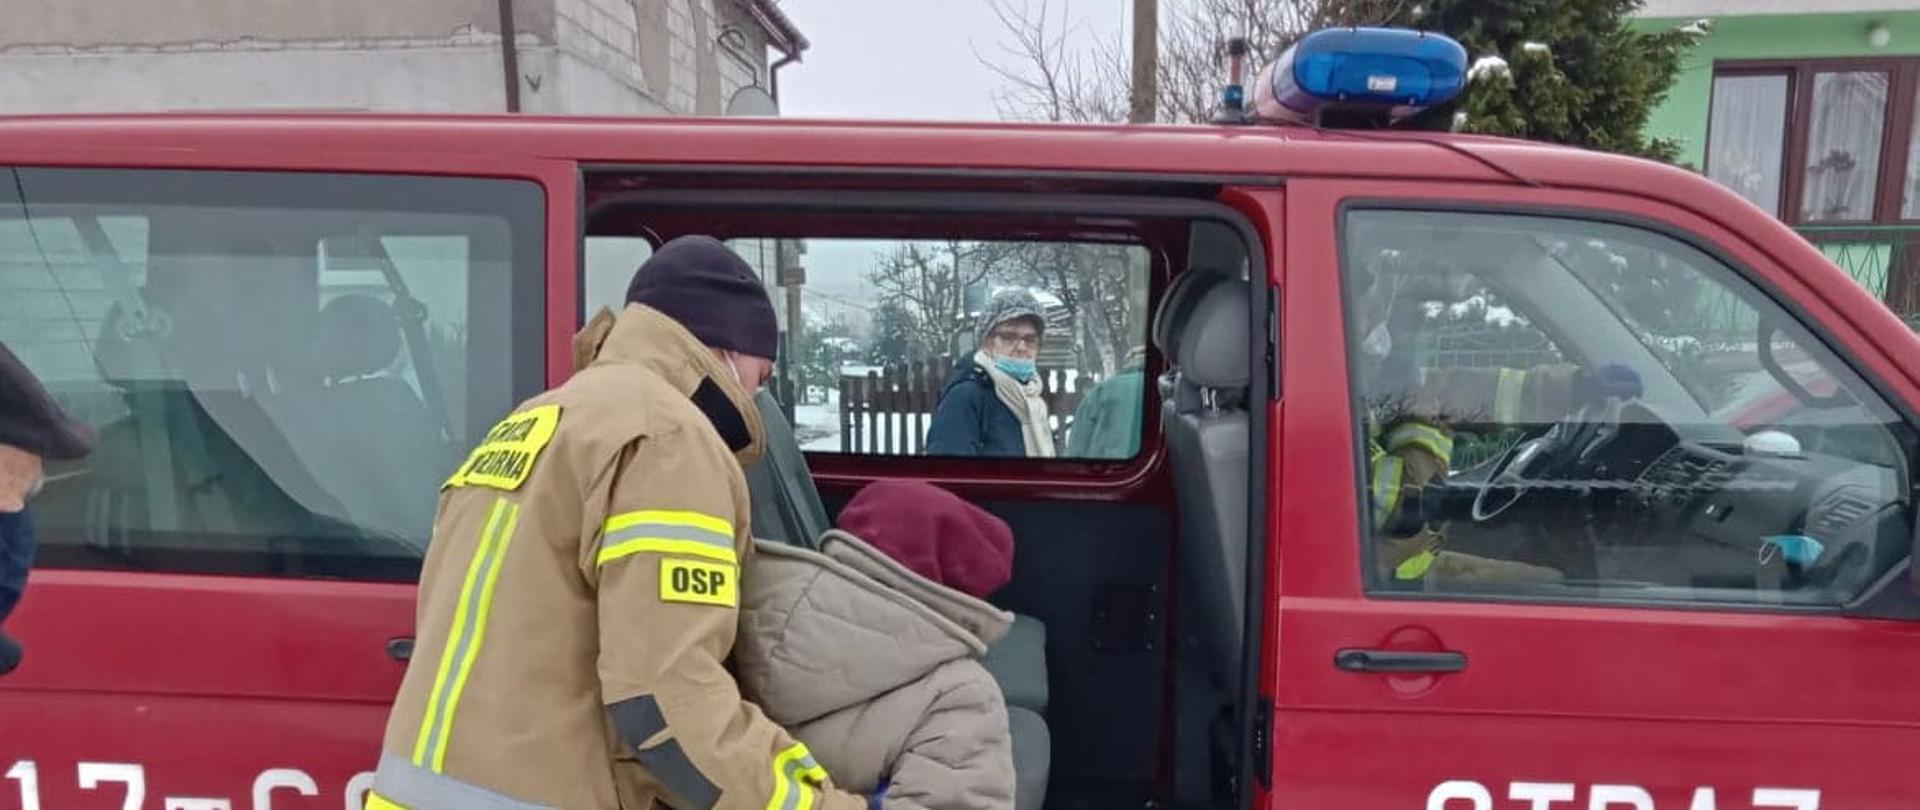 Strażak ochotniczej straży pożarnej ubrany w żółte ubranie specjalne pomaga wsiąść starszej kobiecie do czerwonego samochodu należącego do OSP. W tle budynki.
